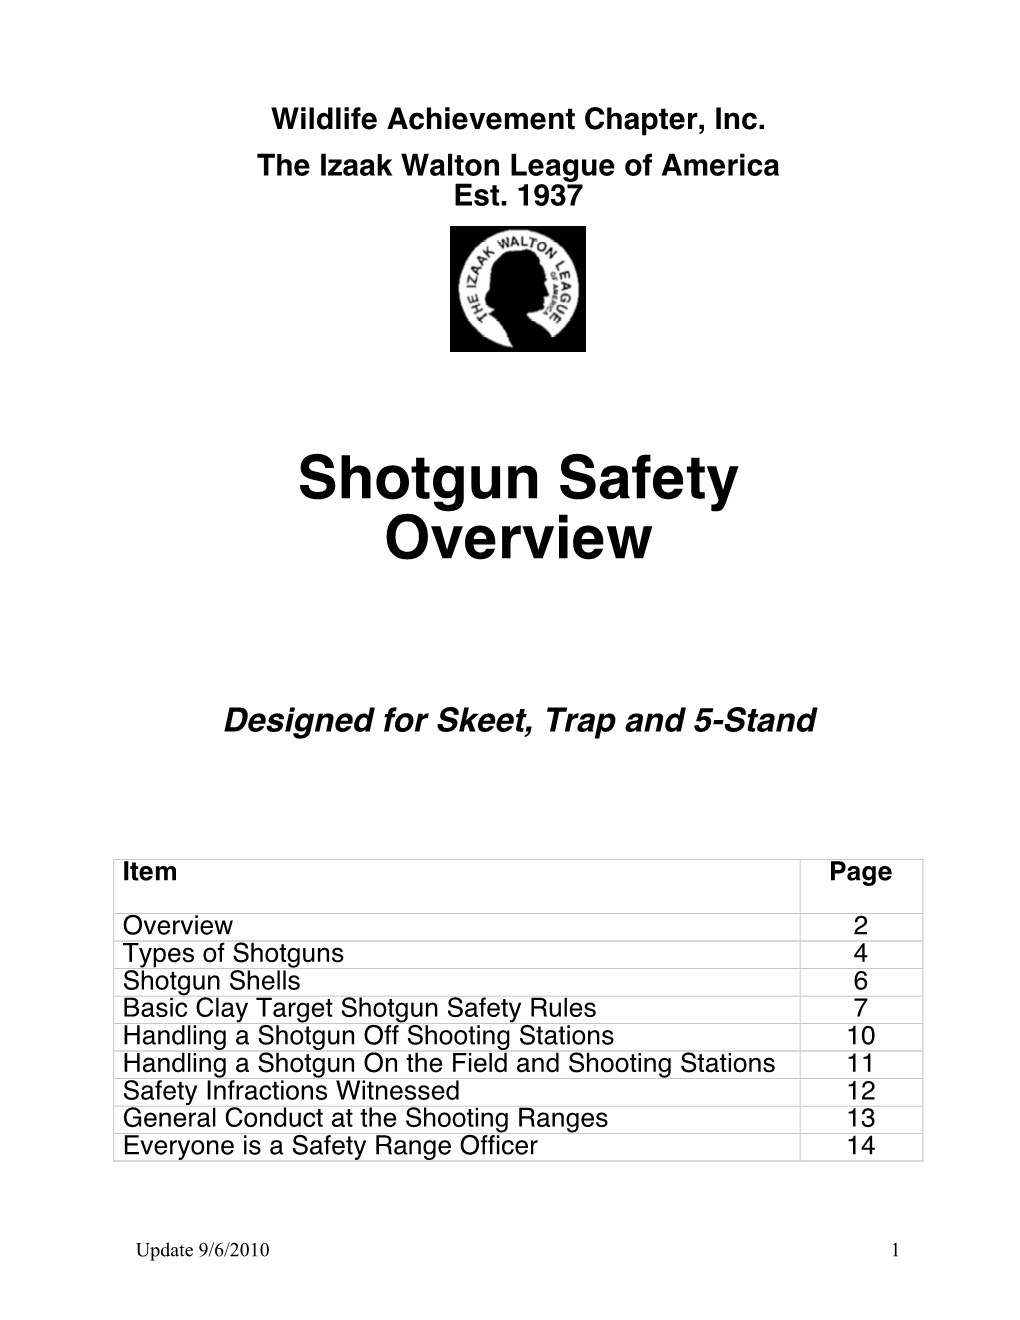 Shotgun Safety Overview